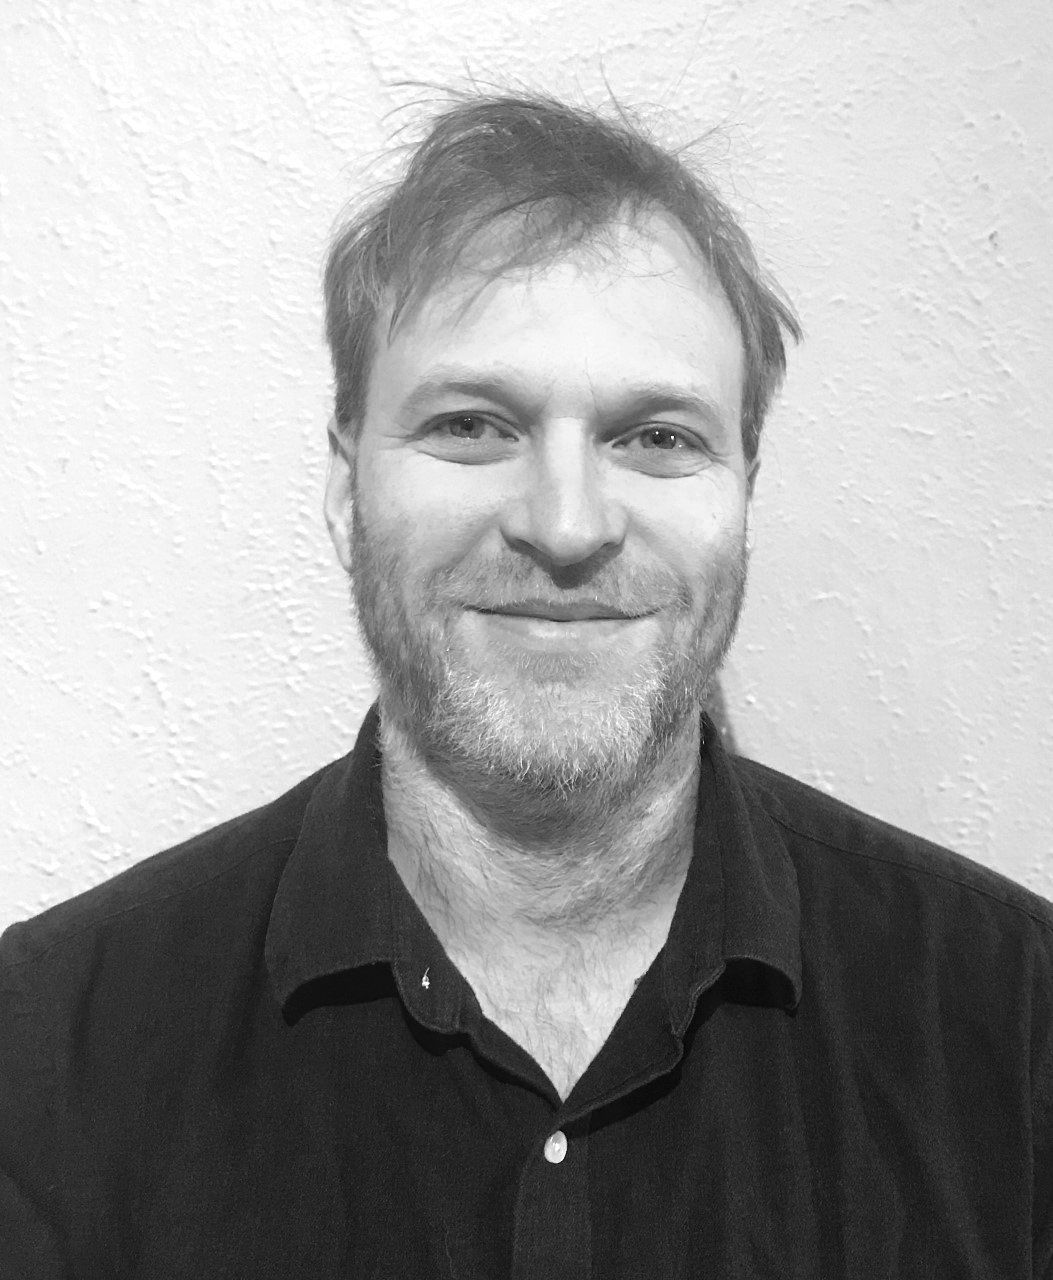 Un homme barbu sourit sur une photo en noir et blanc.